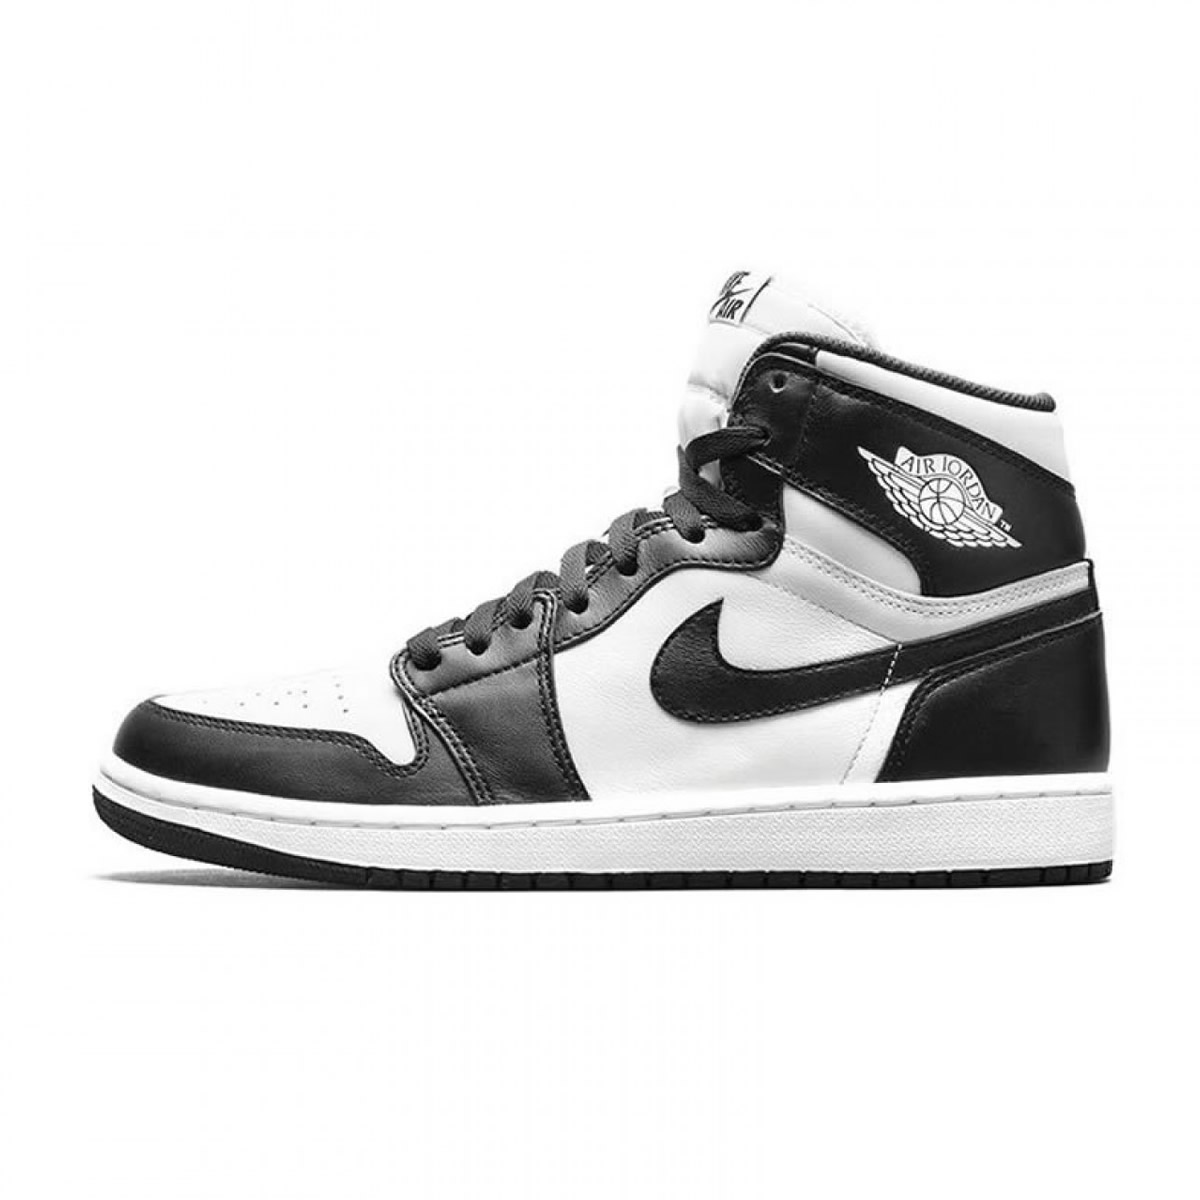 Nike Air Jordan 1 Retro High Og Oreo Black White 555088 010 1 - www.kickbulk.co